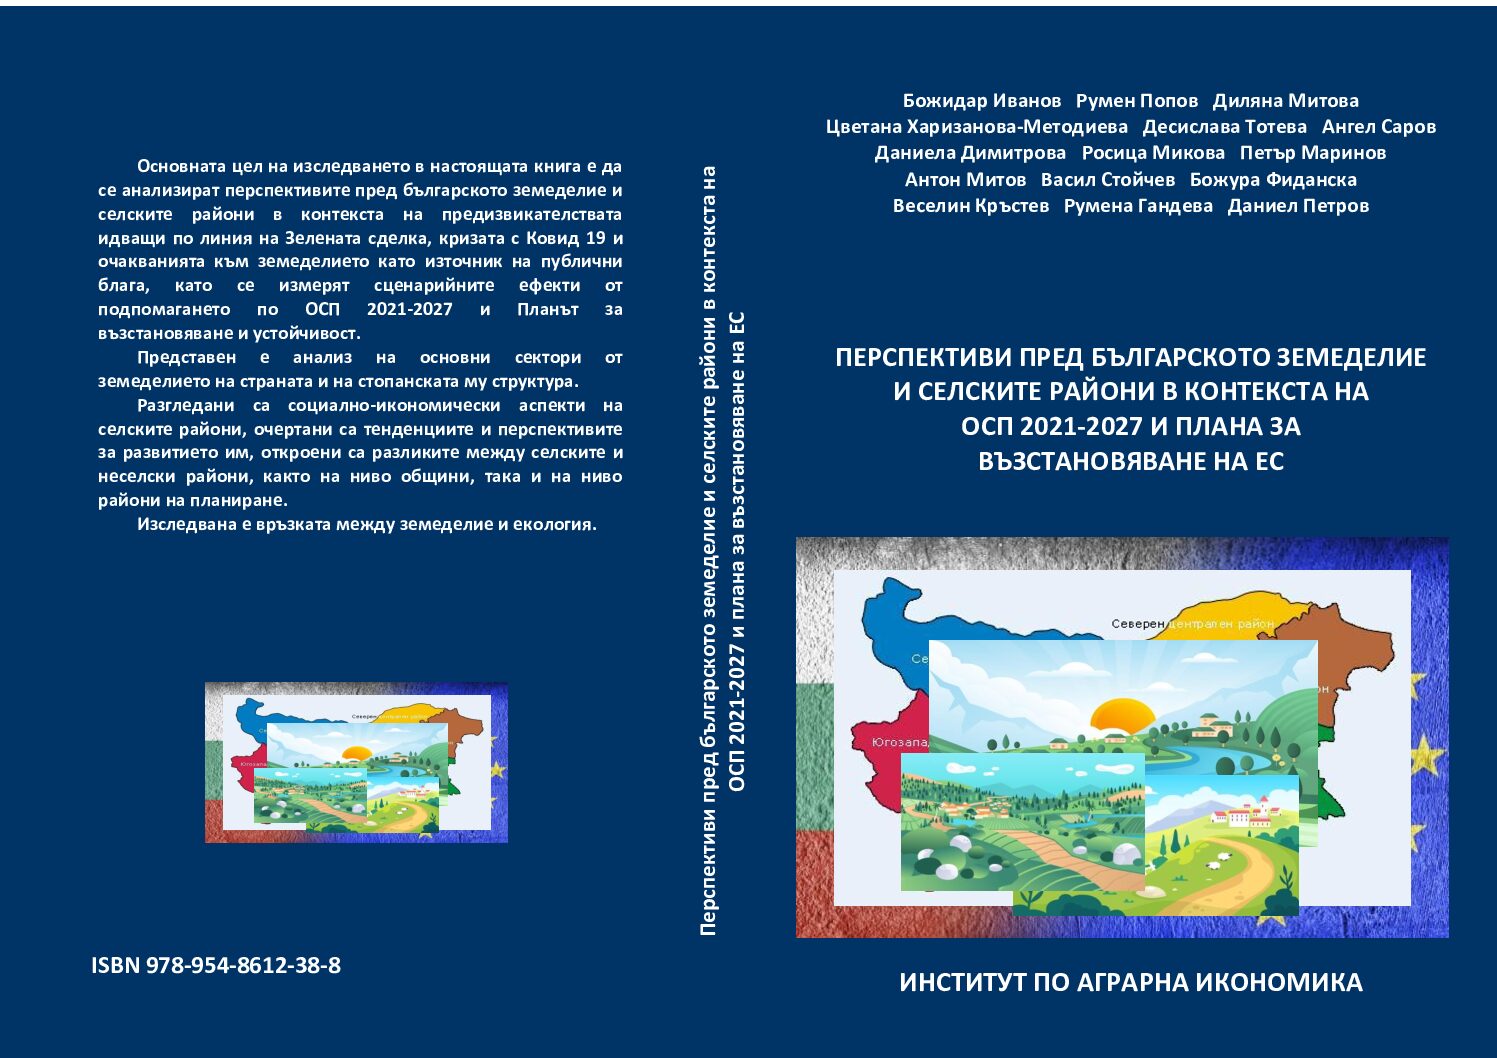 „Перспективи пред българското земеделие и селските райони в контекста на ОСП 2021-2027 и Плана за възстановяване на ЕС”- издава ИАИ